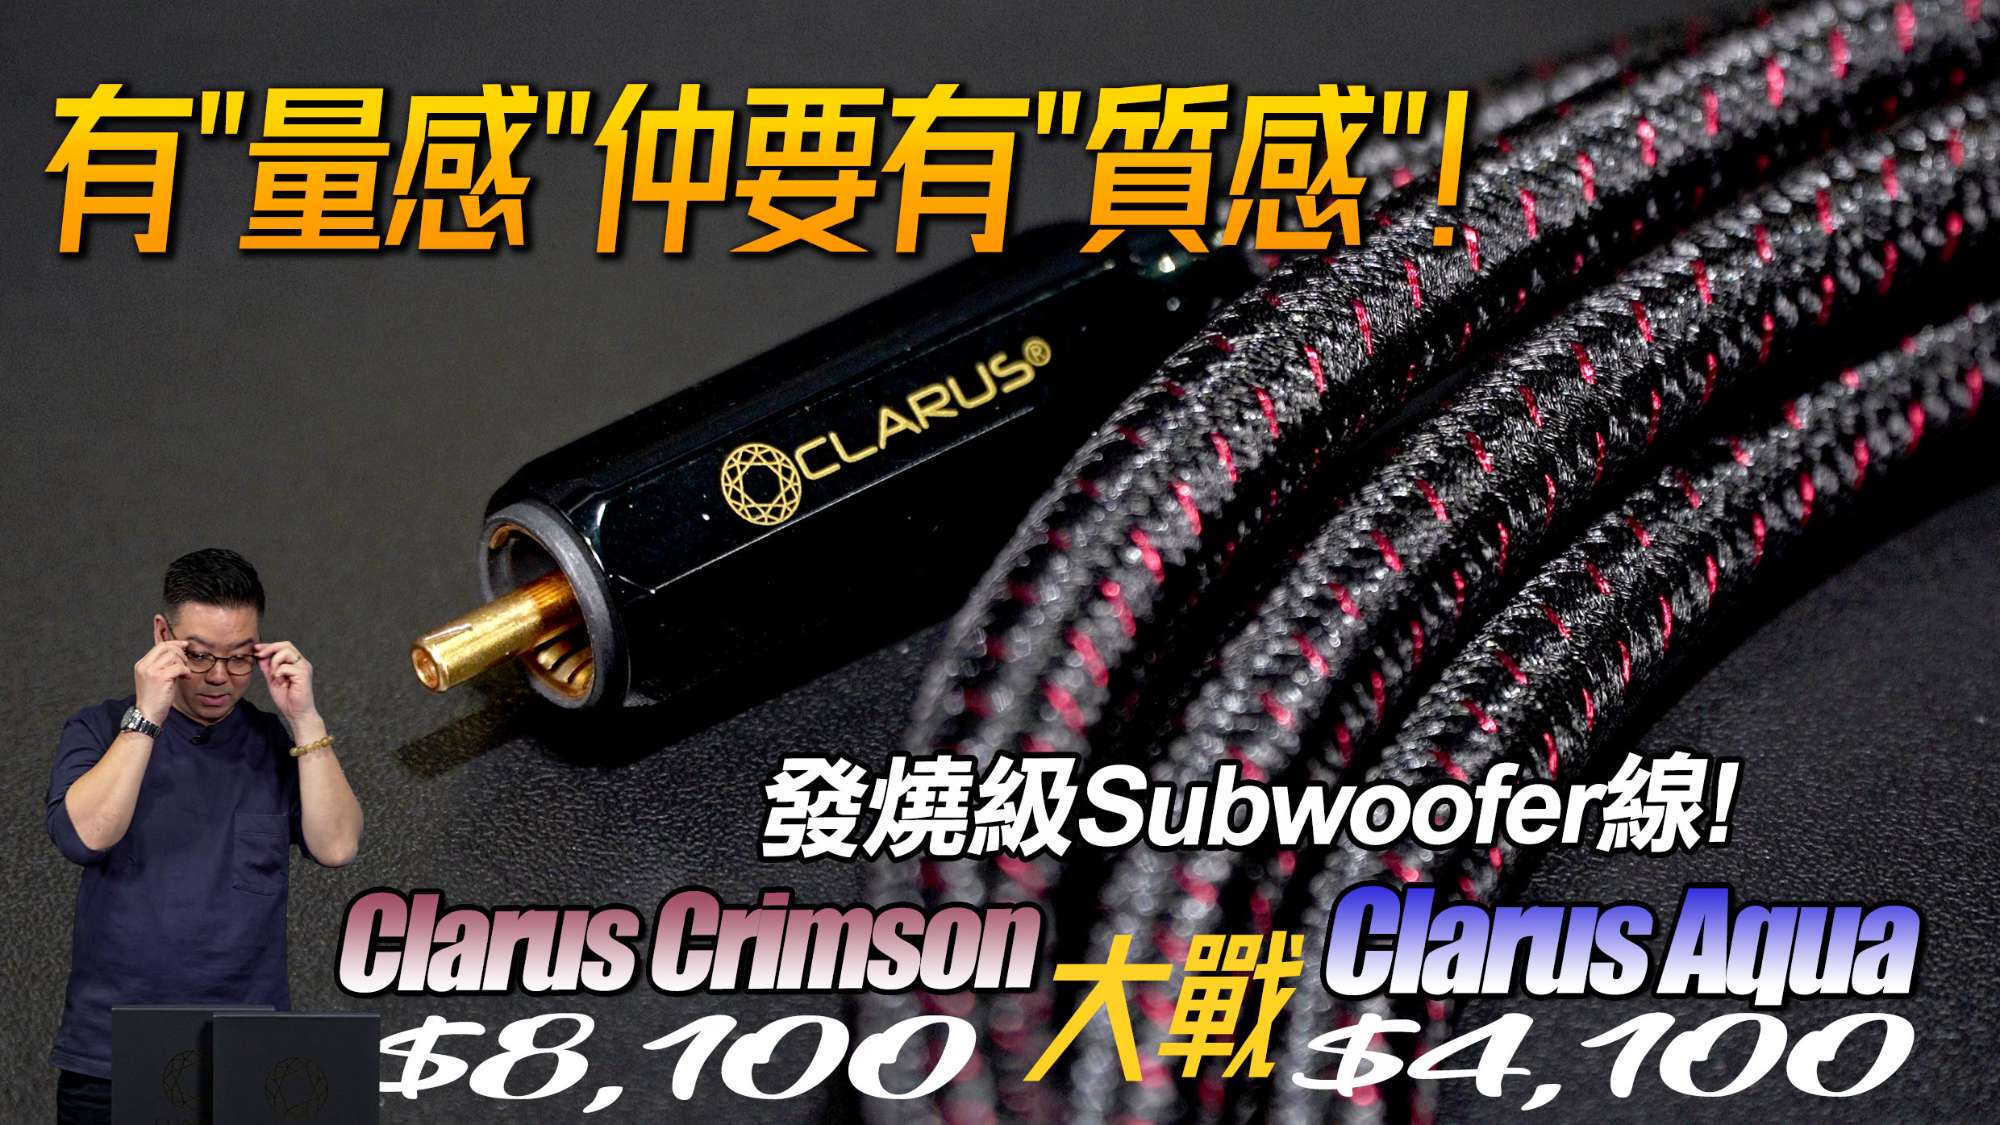 Clarus Subwoofer Cable PK review forum copy.jpg